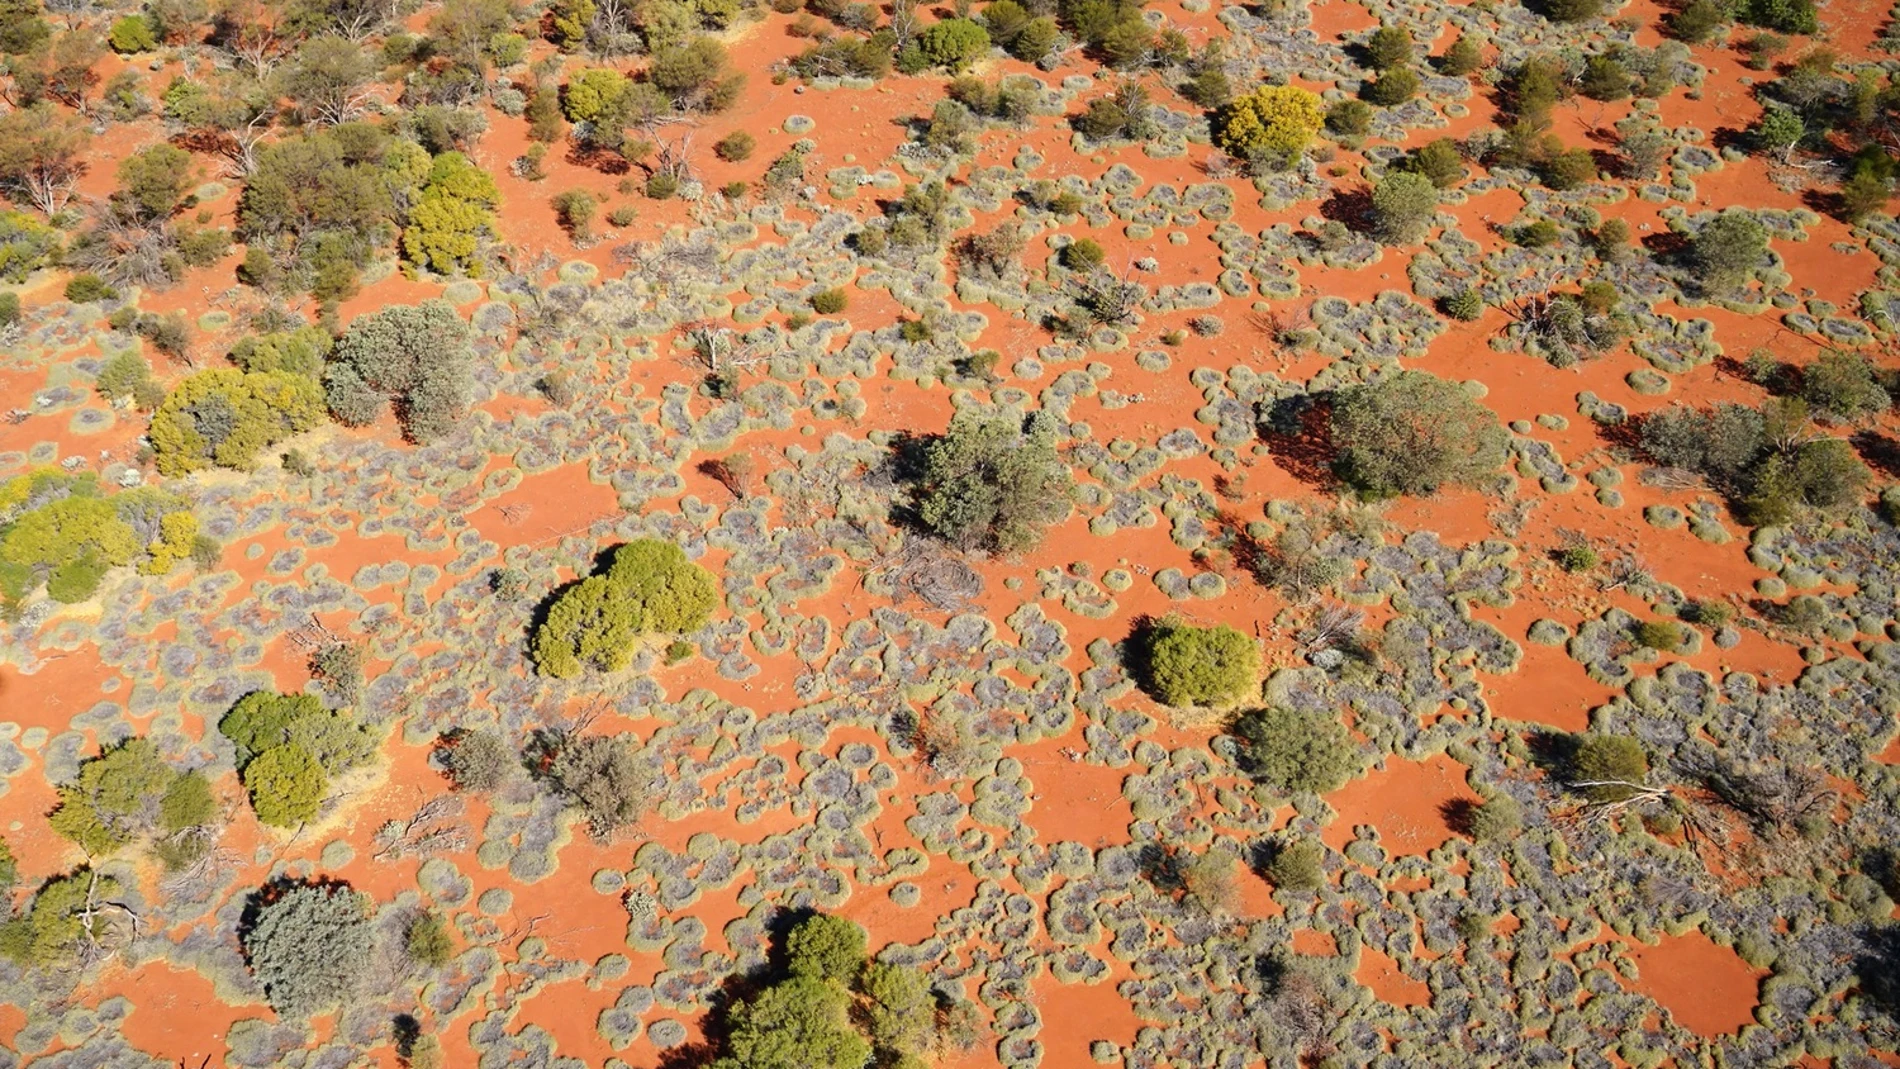 Círculos de hadas en el pasto de las zonas áridas de Australia Occidental